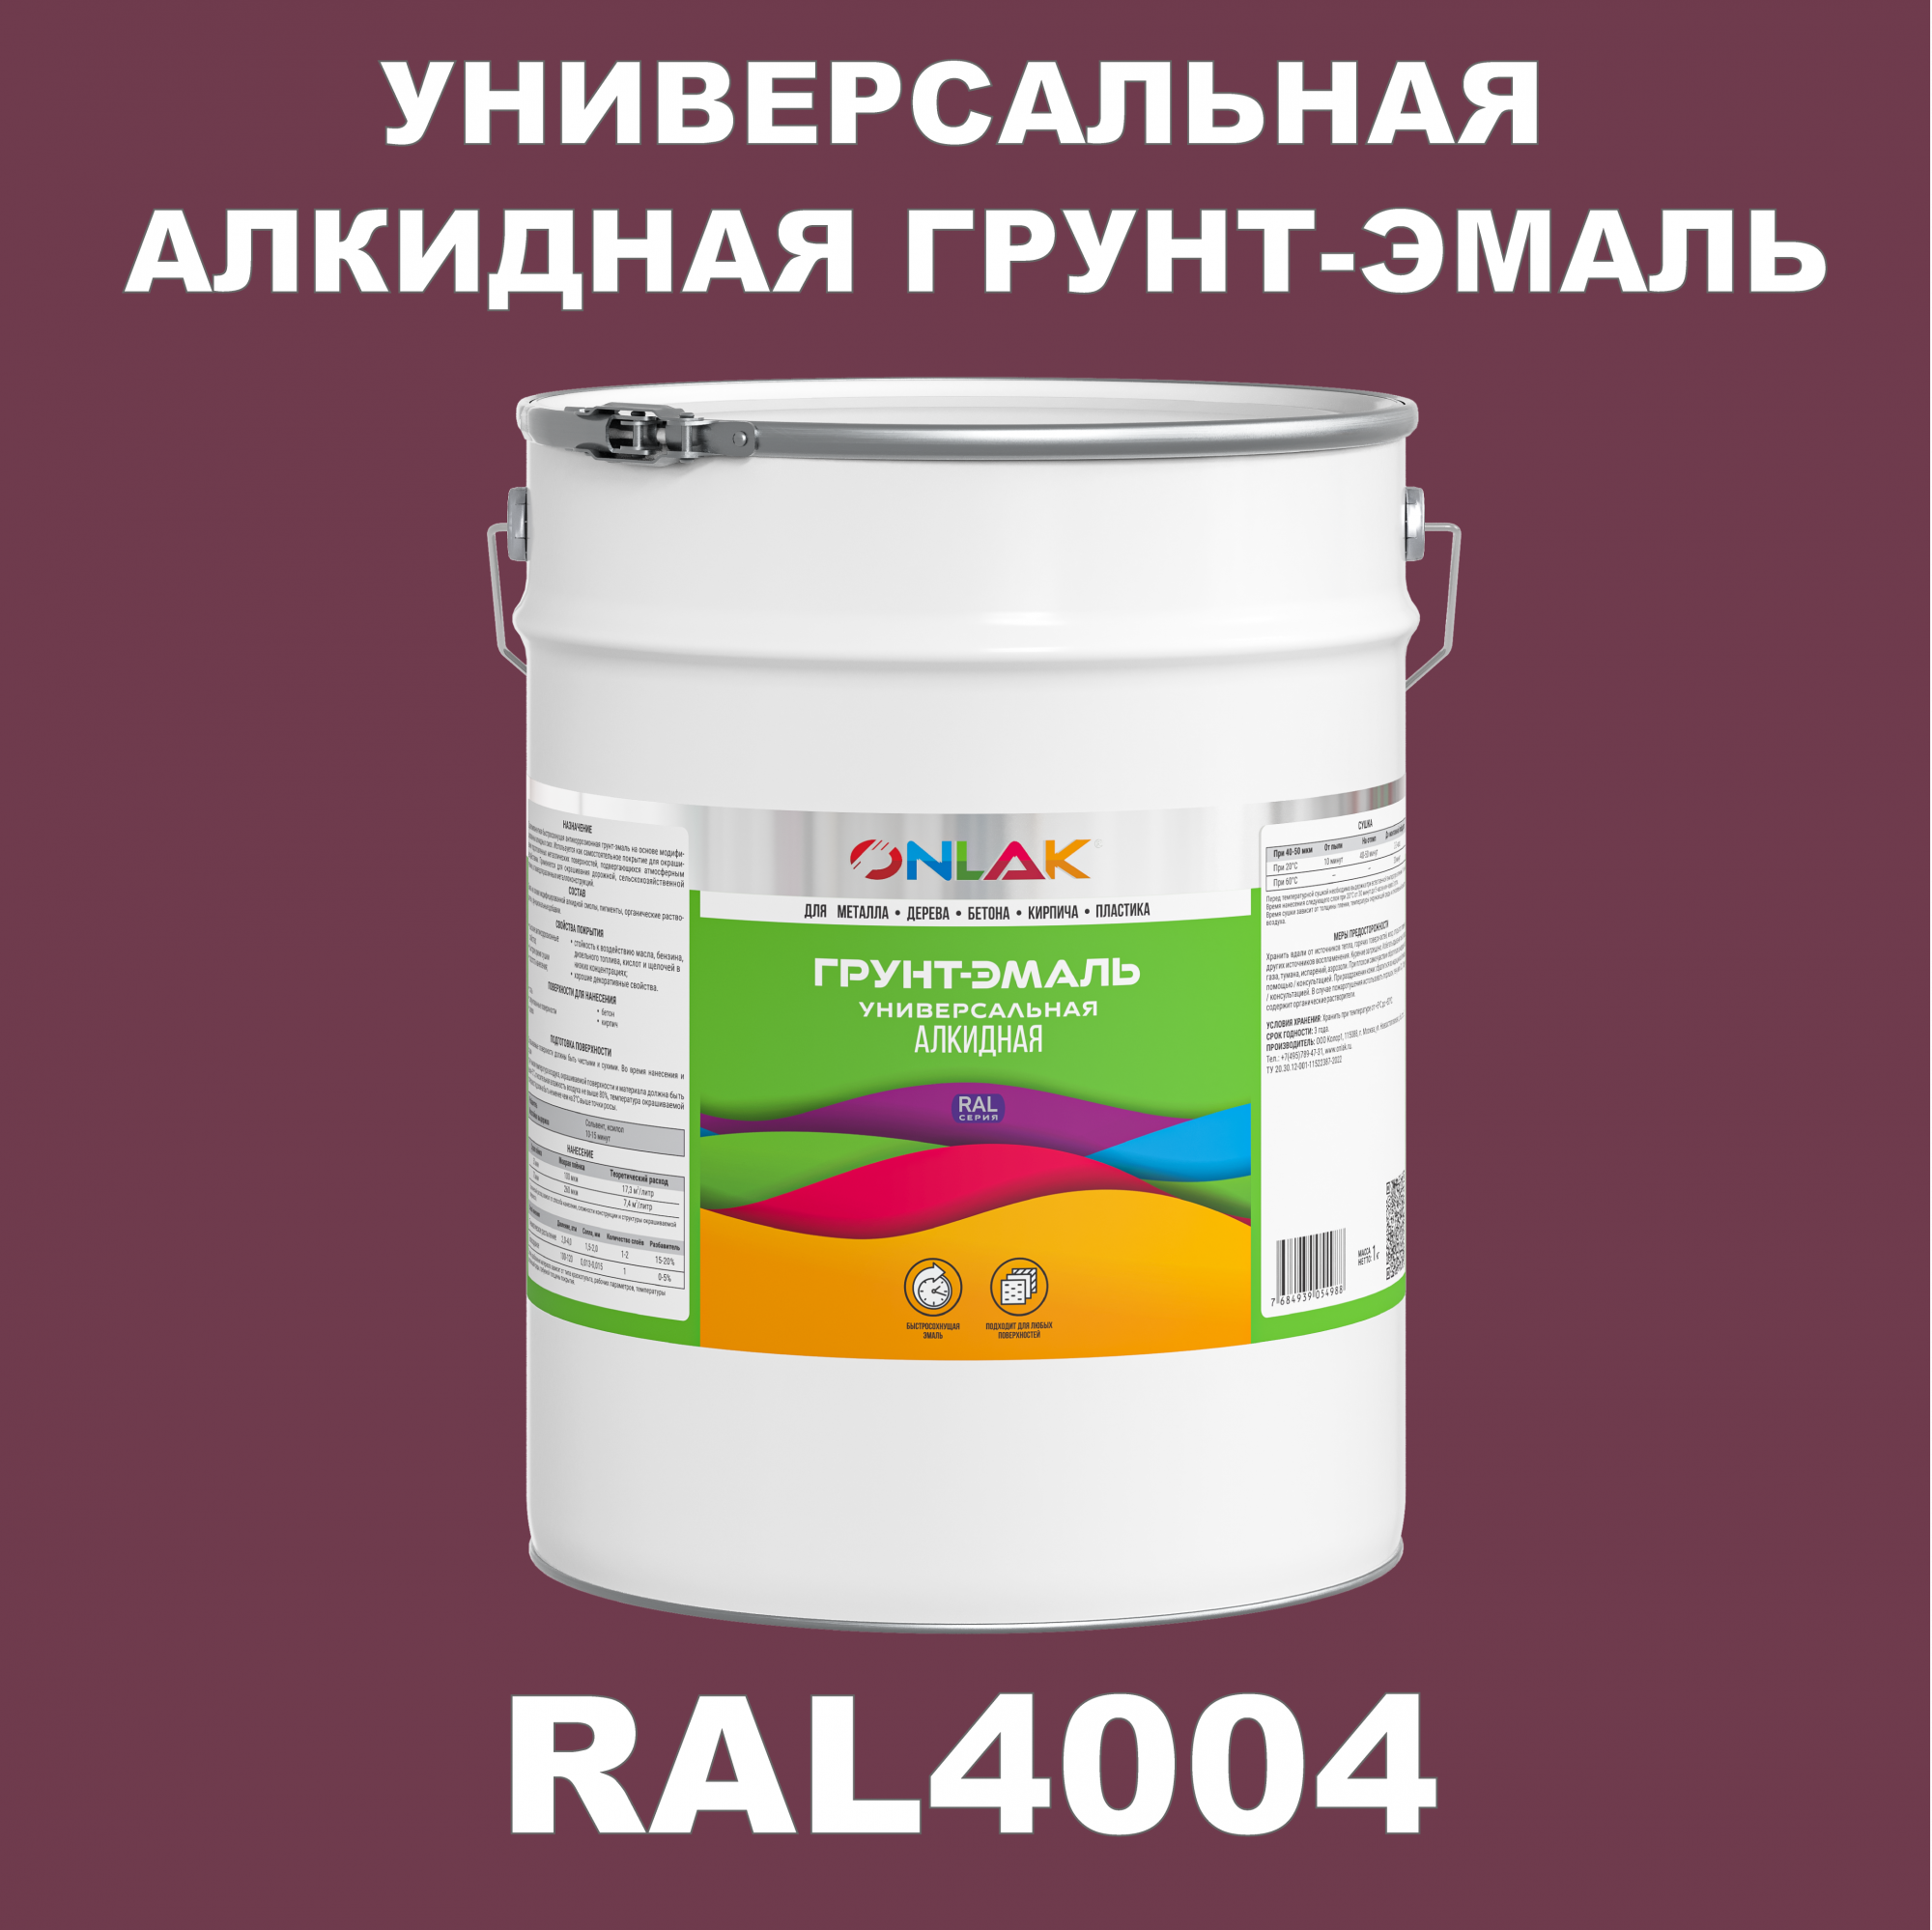 Грунт-эмаль ONLAK 1К RAL4004 антикоррозионная алкидная по металлу по ржавчине 20 кг антикоррозионная грунт эмаль onlak ral 4004 фиолетовый 657 мл